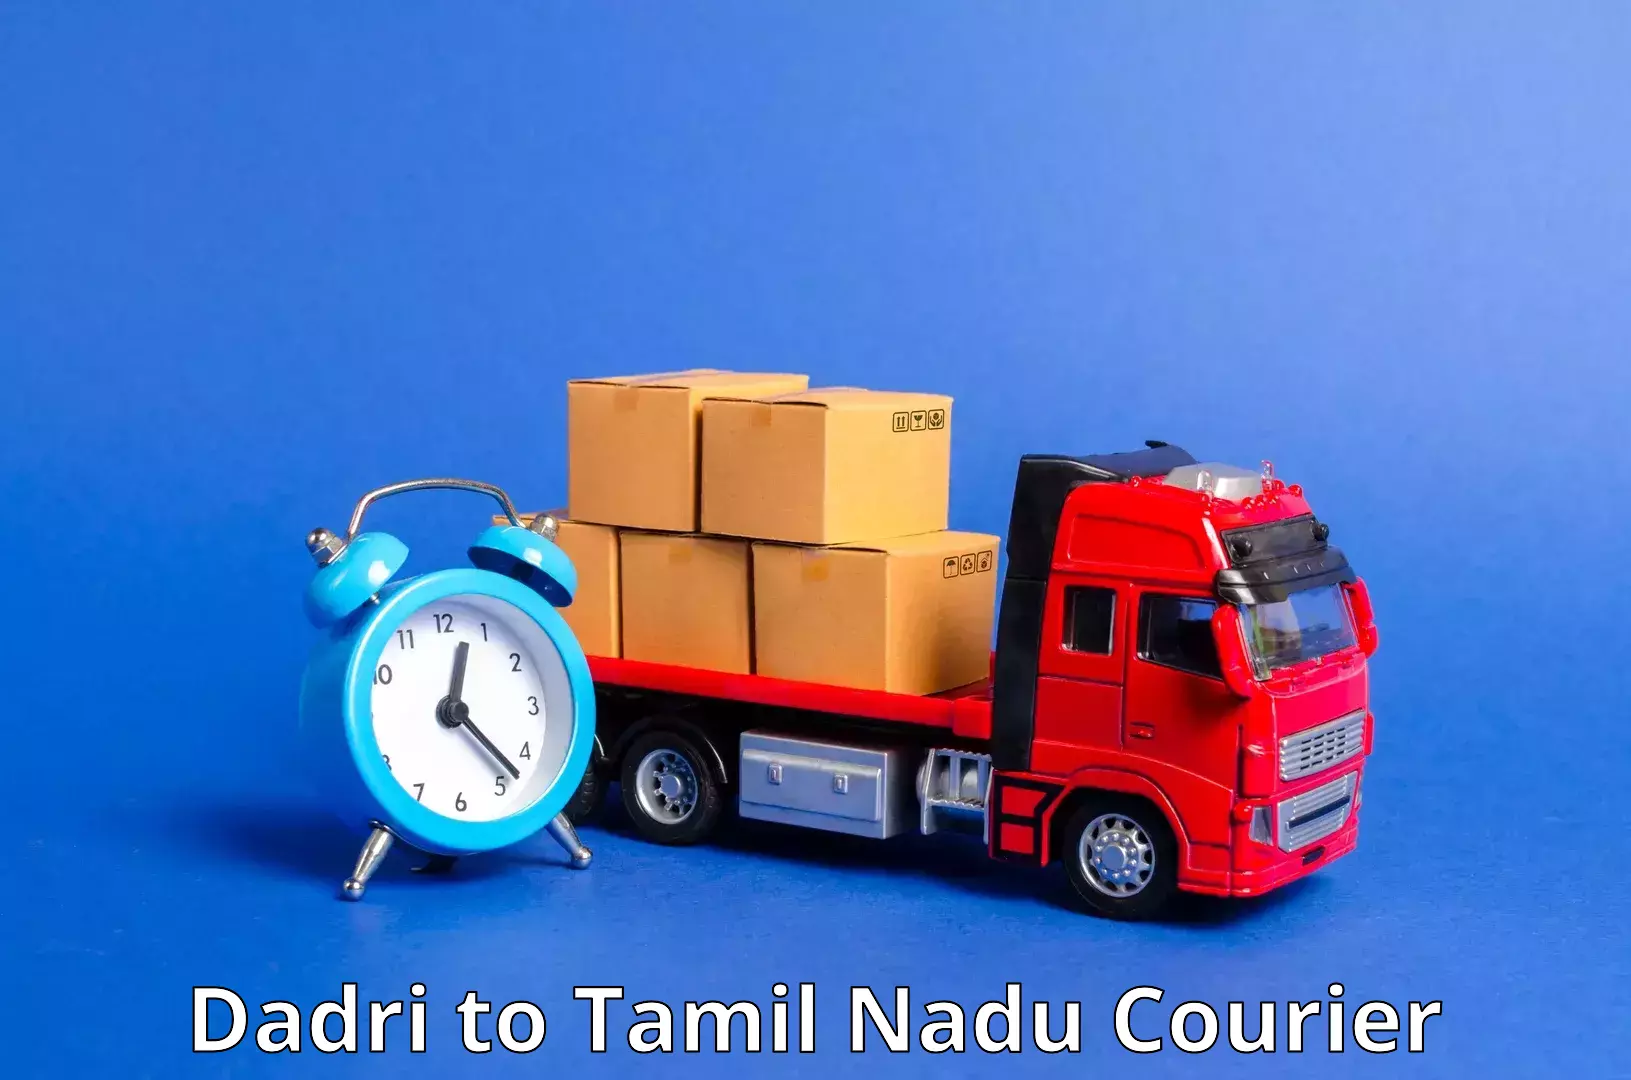 Efficient parcel service Dadri to Chinnasalem